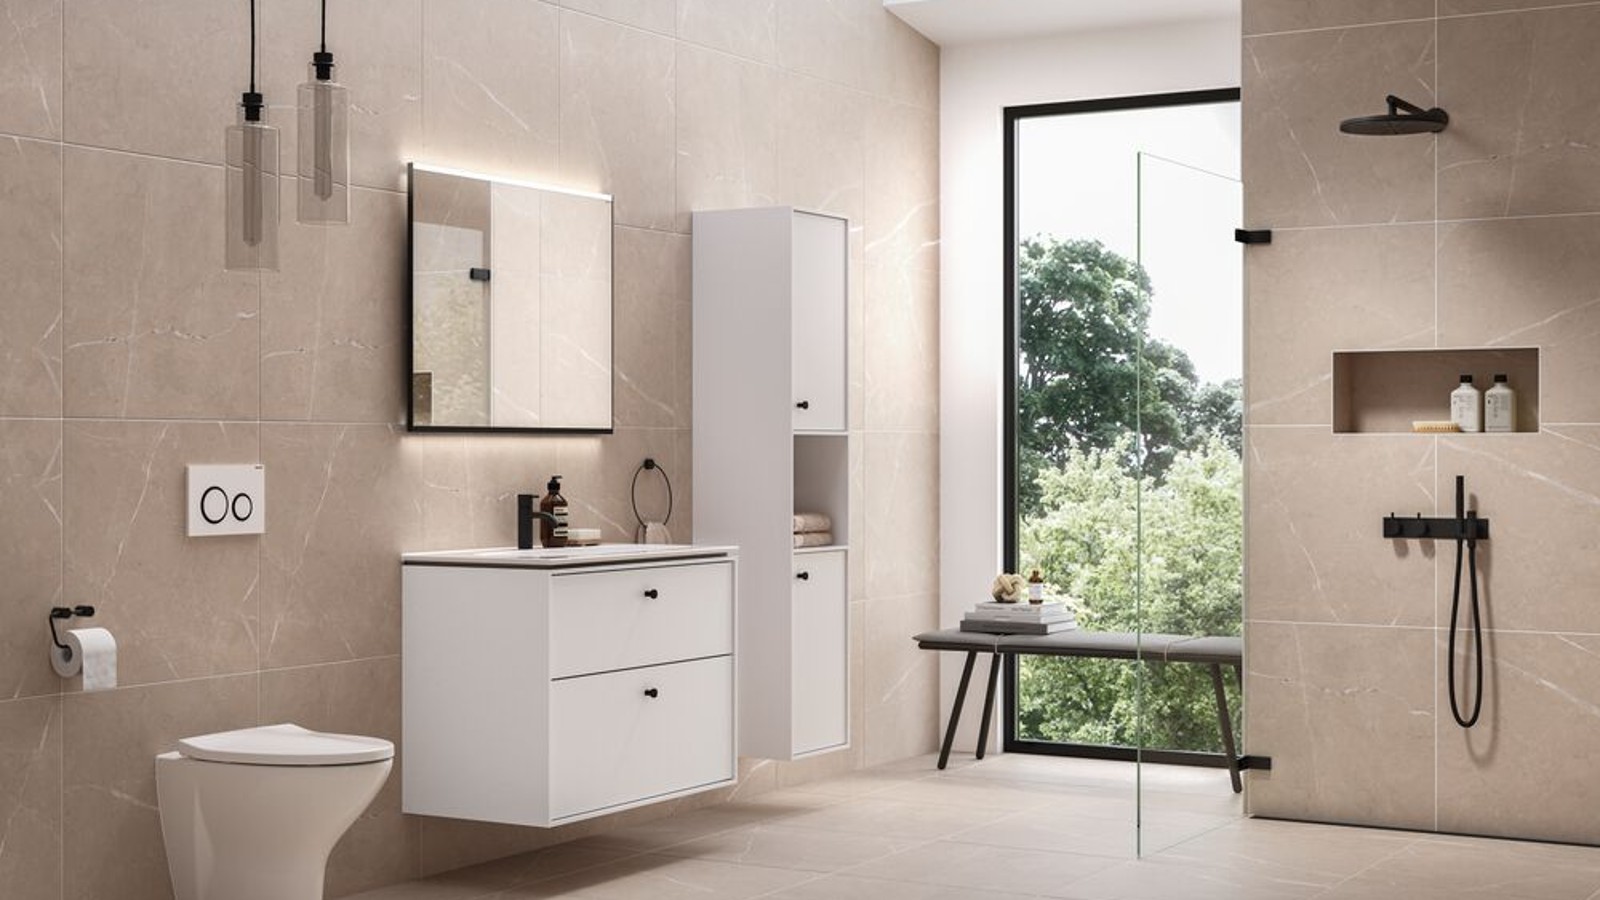 IDO kylpyhuone eleganteilla kylpyhuonekalusteilla ja tuotteilla